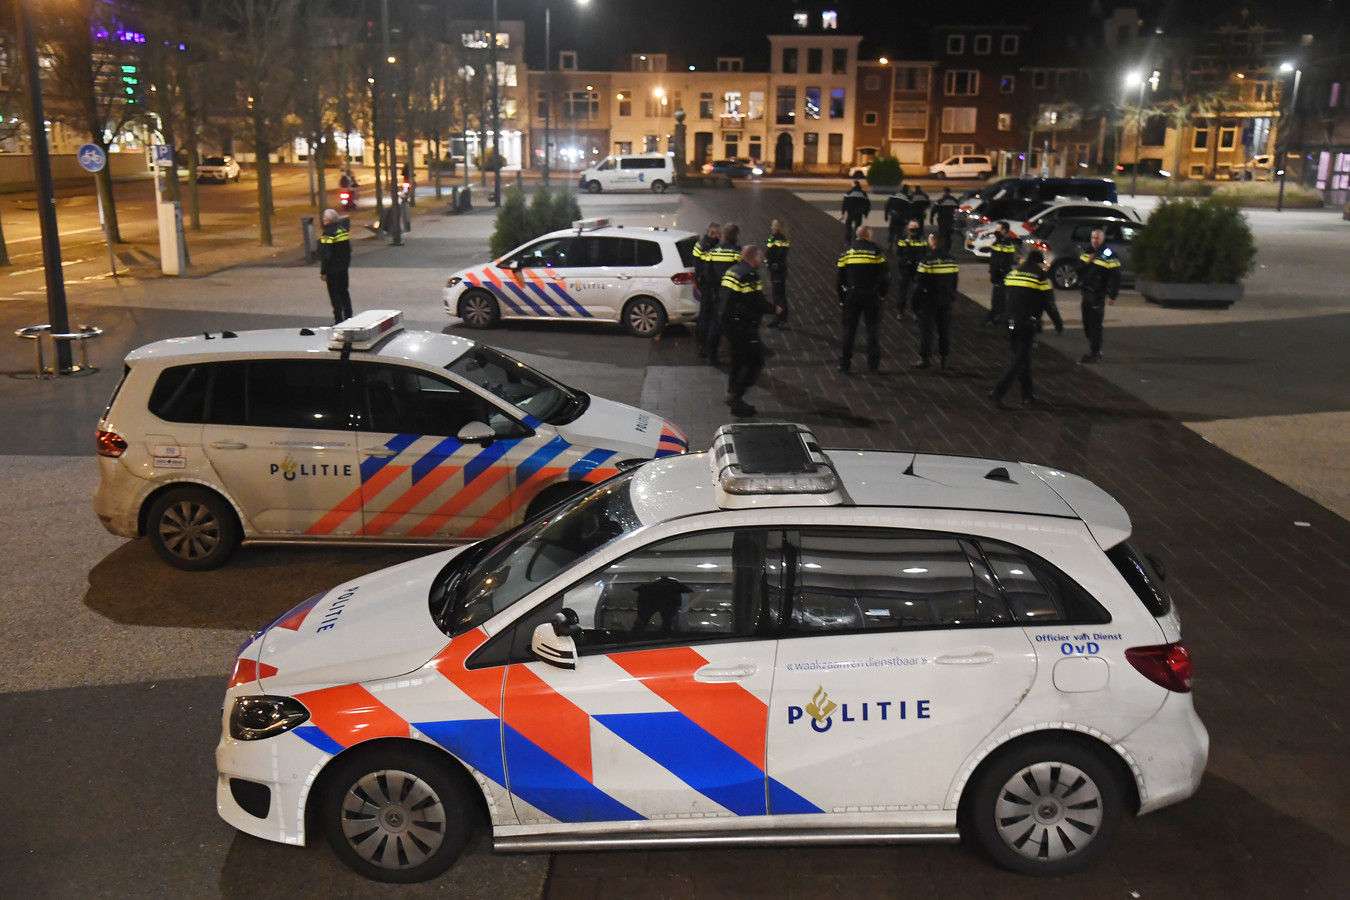 Politie op Walcheren wel paraat, maar minder zichtbaar: 'We willen geen spelletjes | pzc.nl